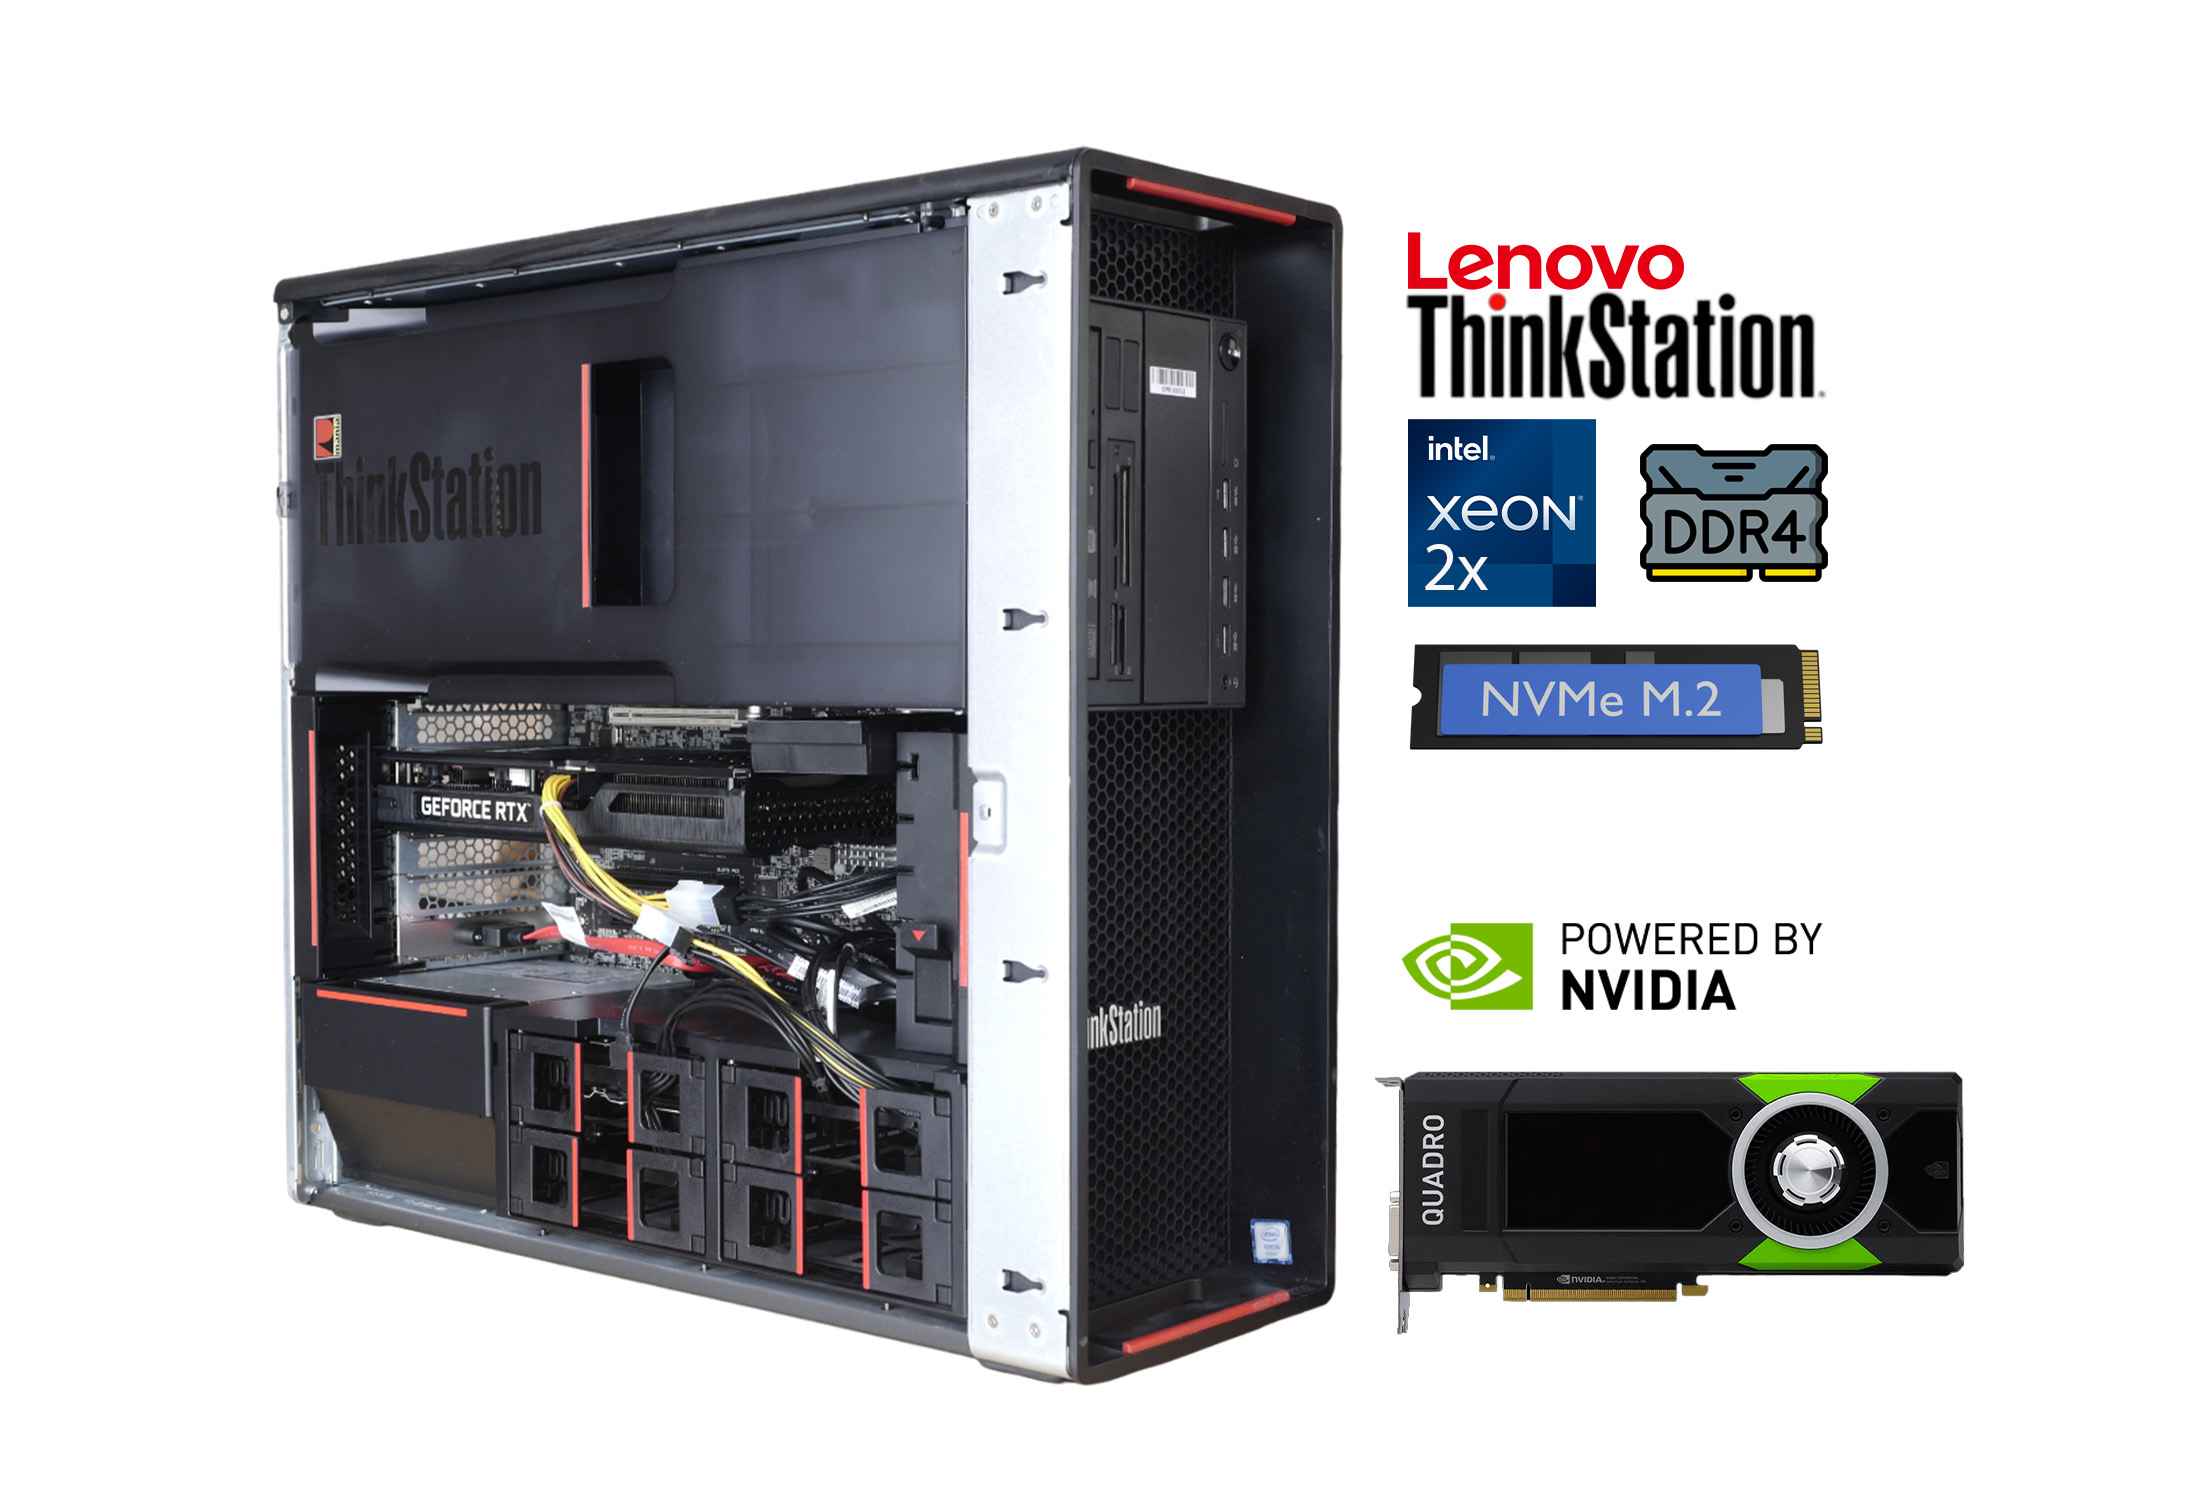 Lenovo Thinkstation P700 2x Xeon E5-2690v3 DDR4 NVMe Quadro M4000-iuZor.jpeg